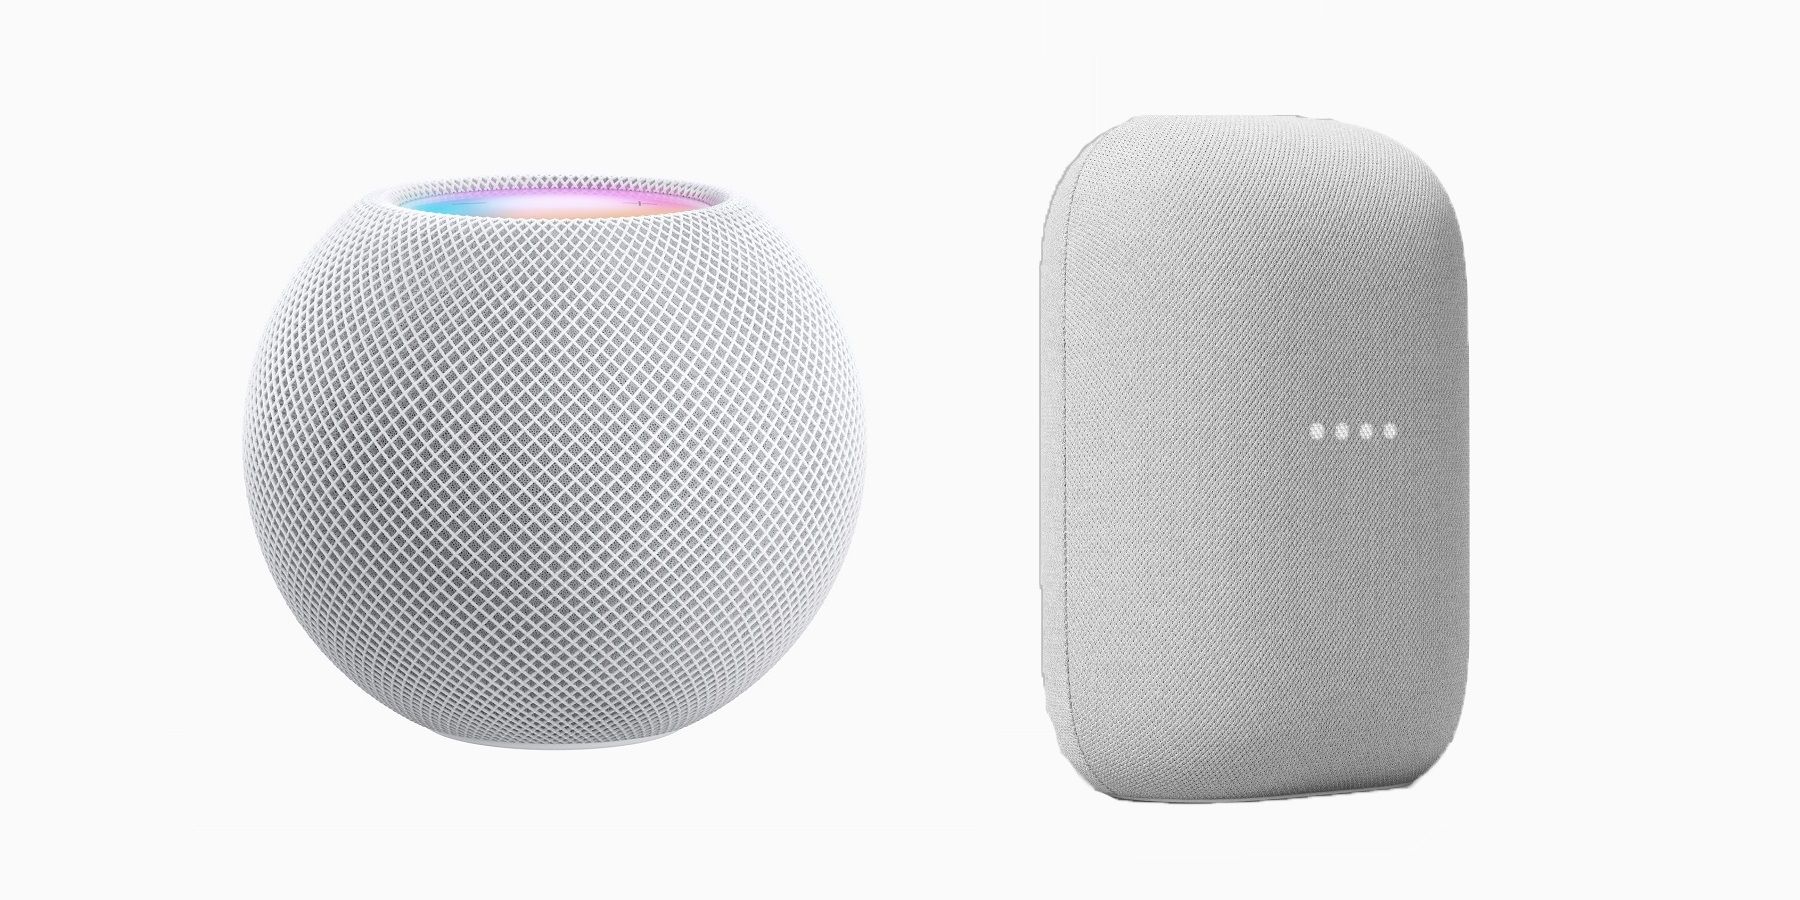 Apple & Google smart speakers